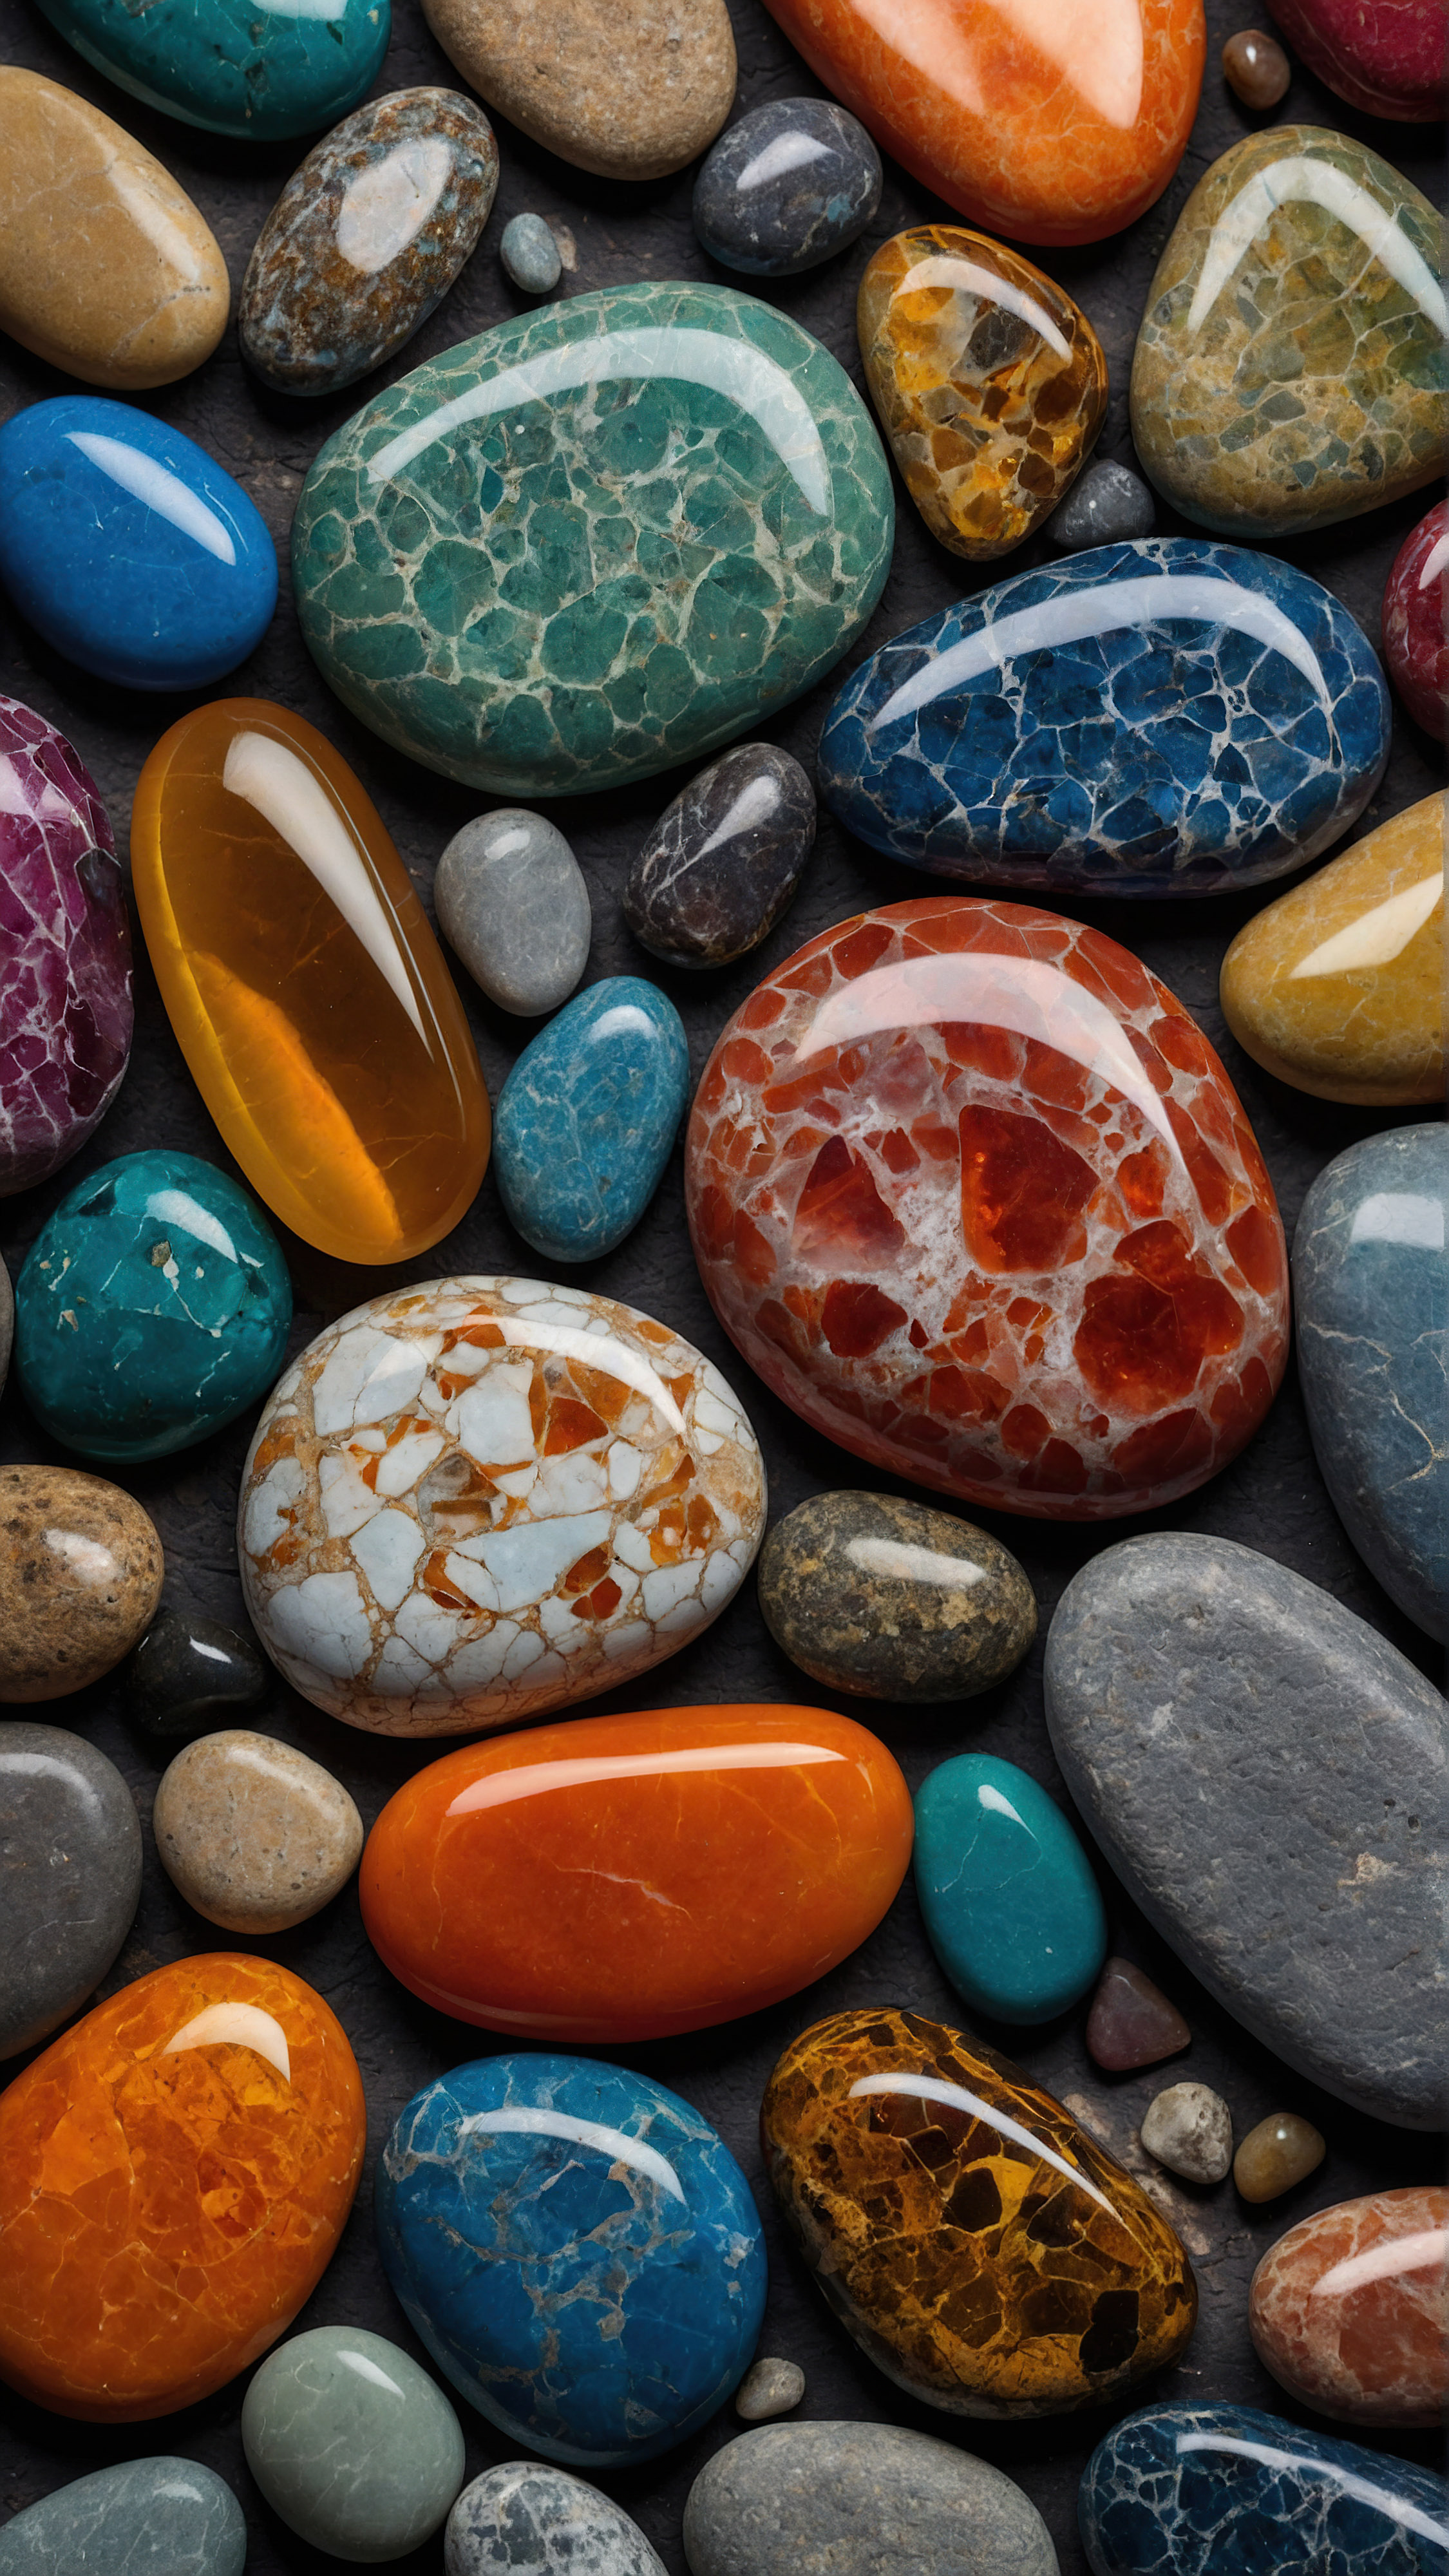 Profitez de la beauté et du style de nos meilleurs fonds d'écran iPhone HD gratuits, présentant une collection de pierres colorées, abstraites et lisses de différentes tailles et formes, illuminées pour mettre en valeur leurs contours et textures.